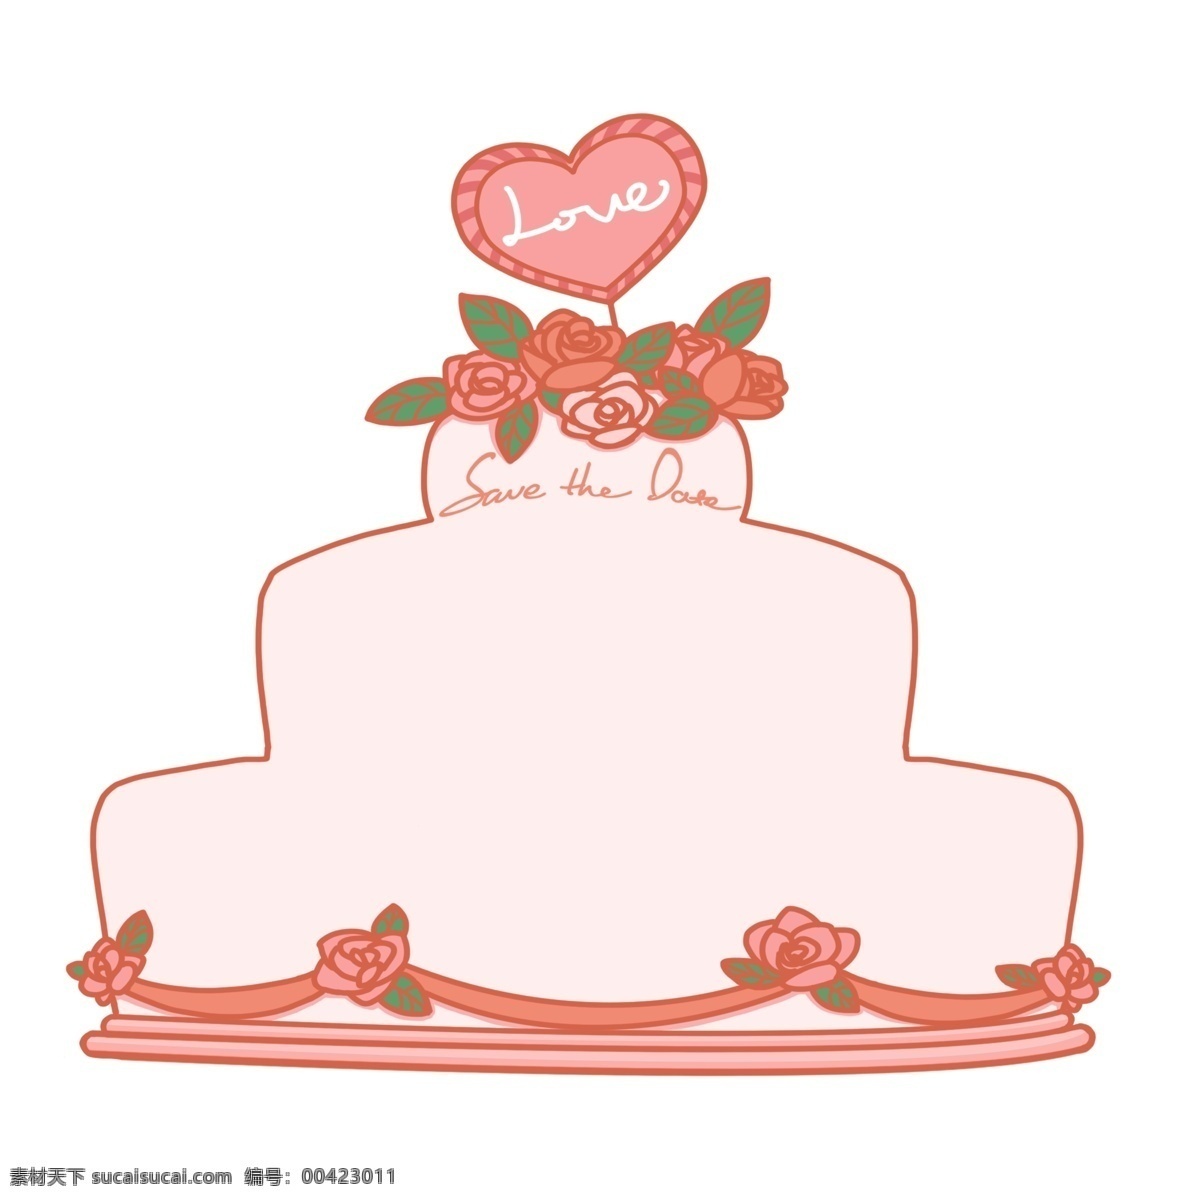 粉色 结婚 蛋糕 边框 粉色的边框 结婚蛋糕边框 浪漫边框 鲜花 花朵装饰 婚庆 婚礼装饰 节日蛋糕 边框装饰